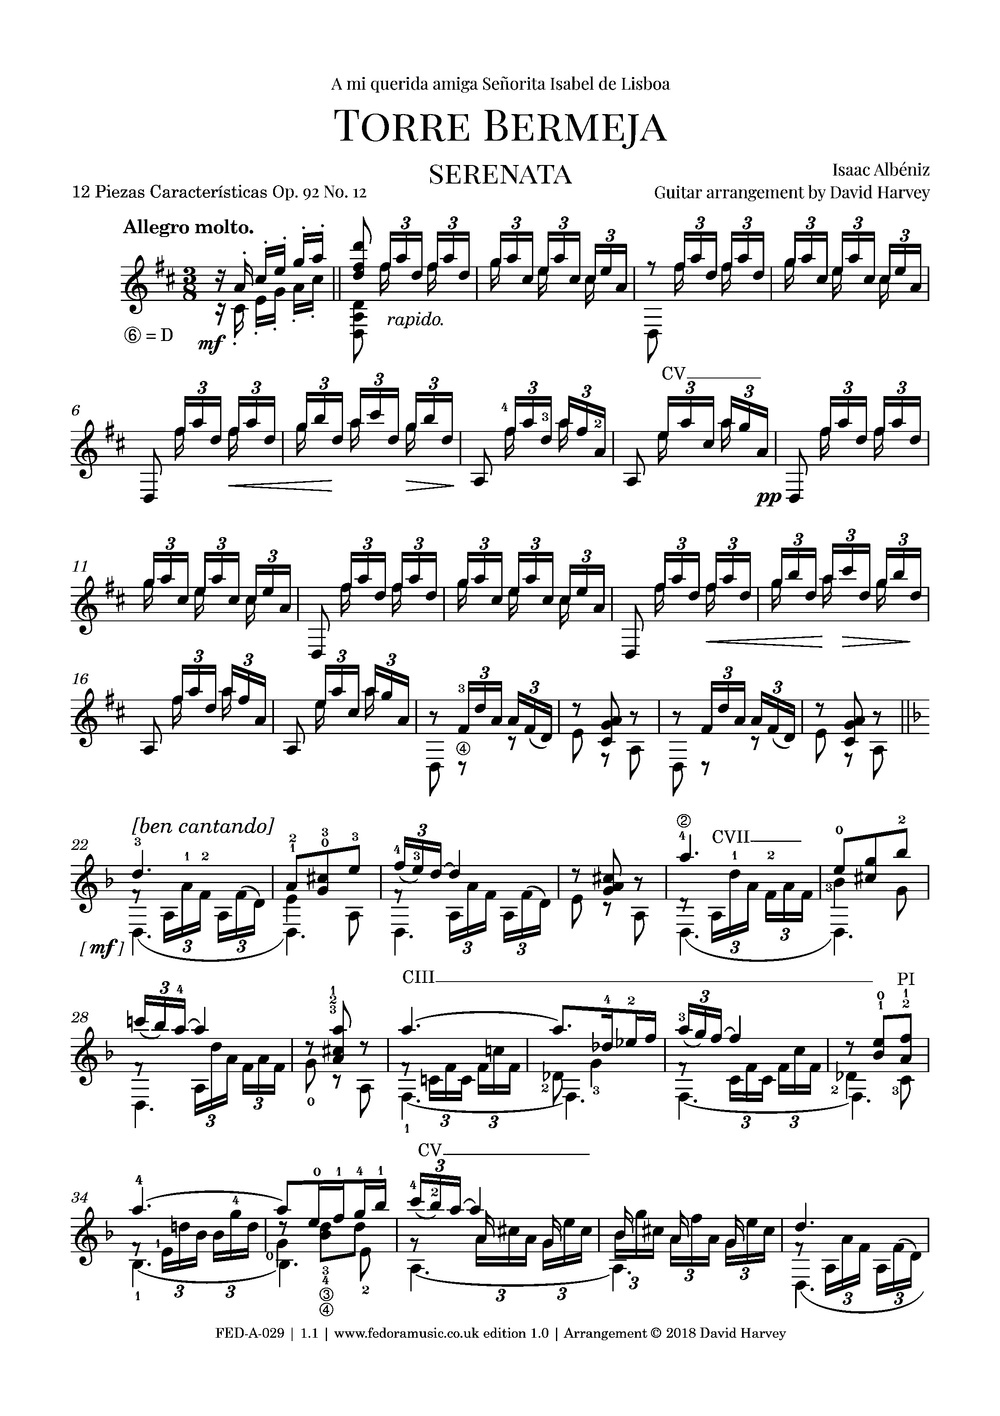 Torre Bermeja (12 Piezas Características, Op. 92 No.12) - sample page